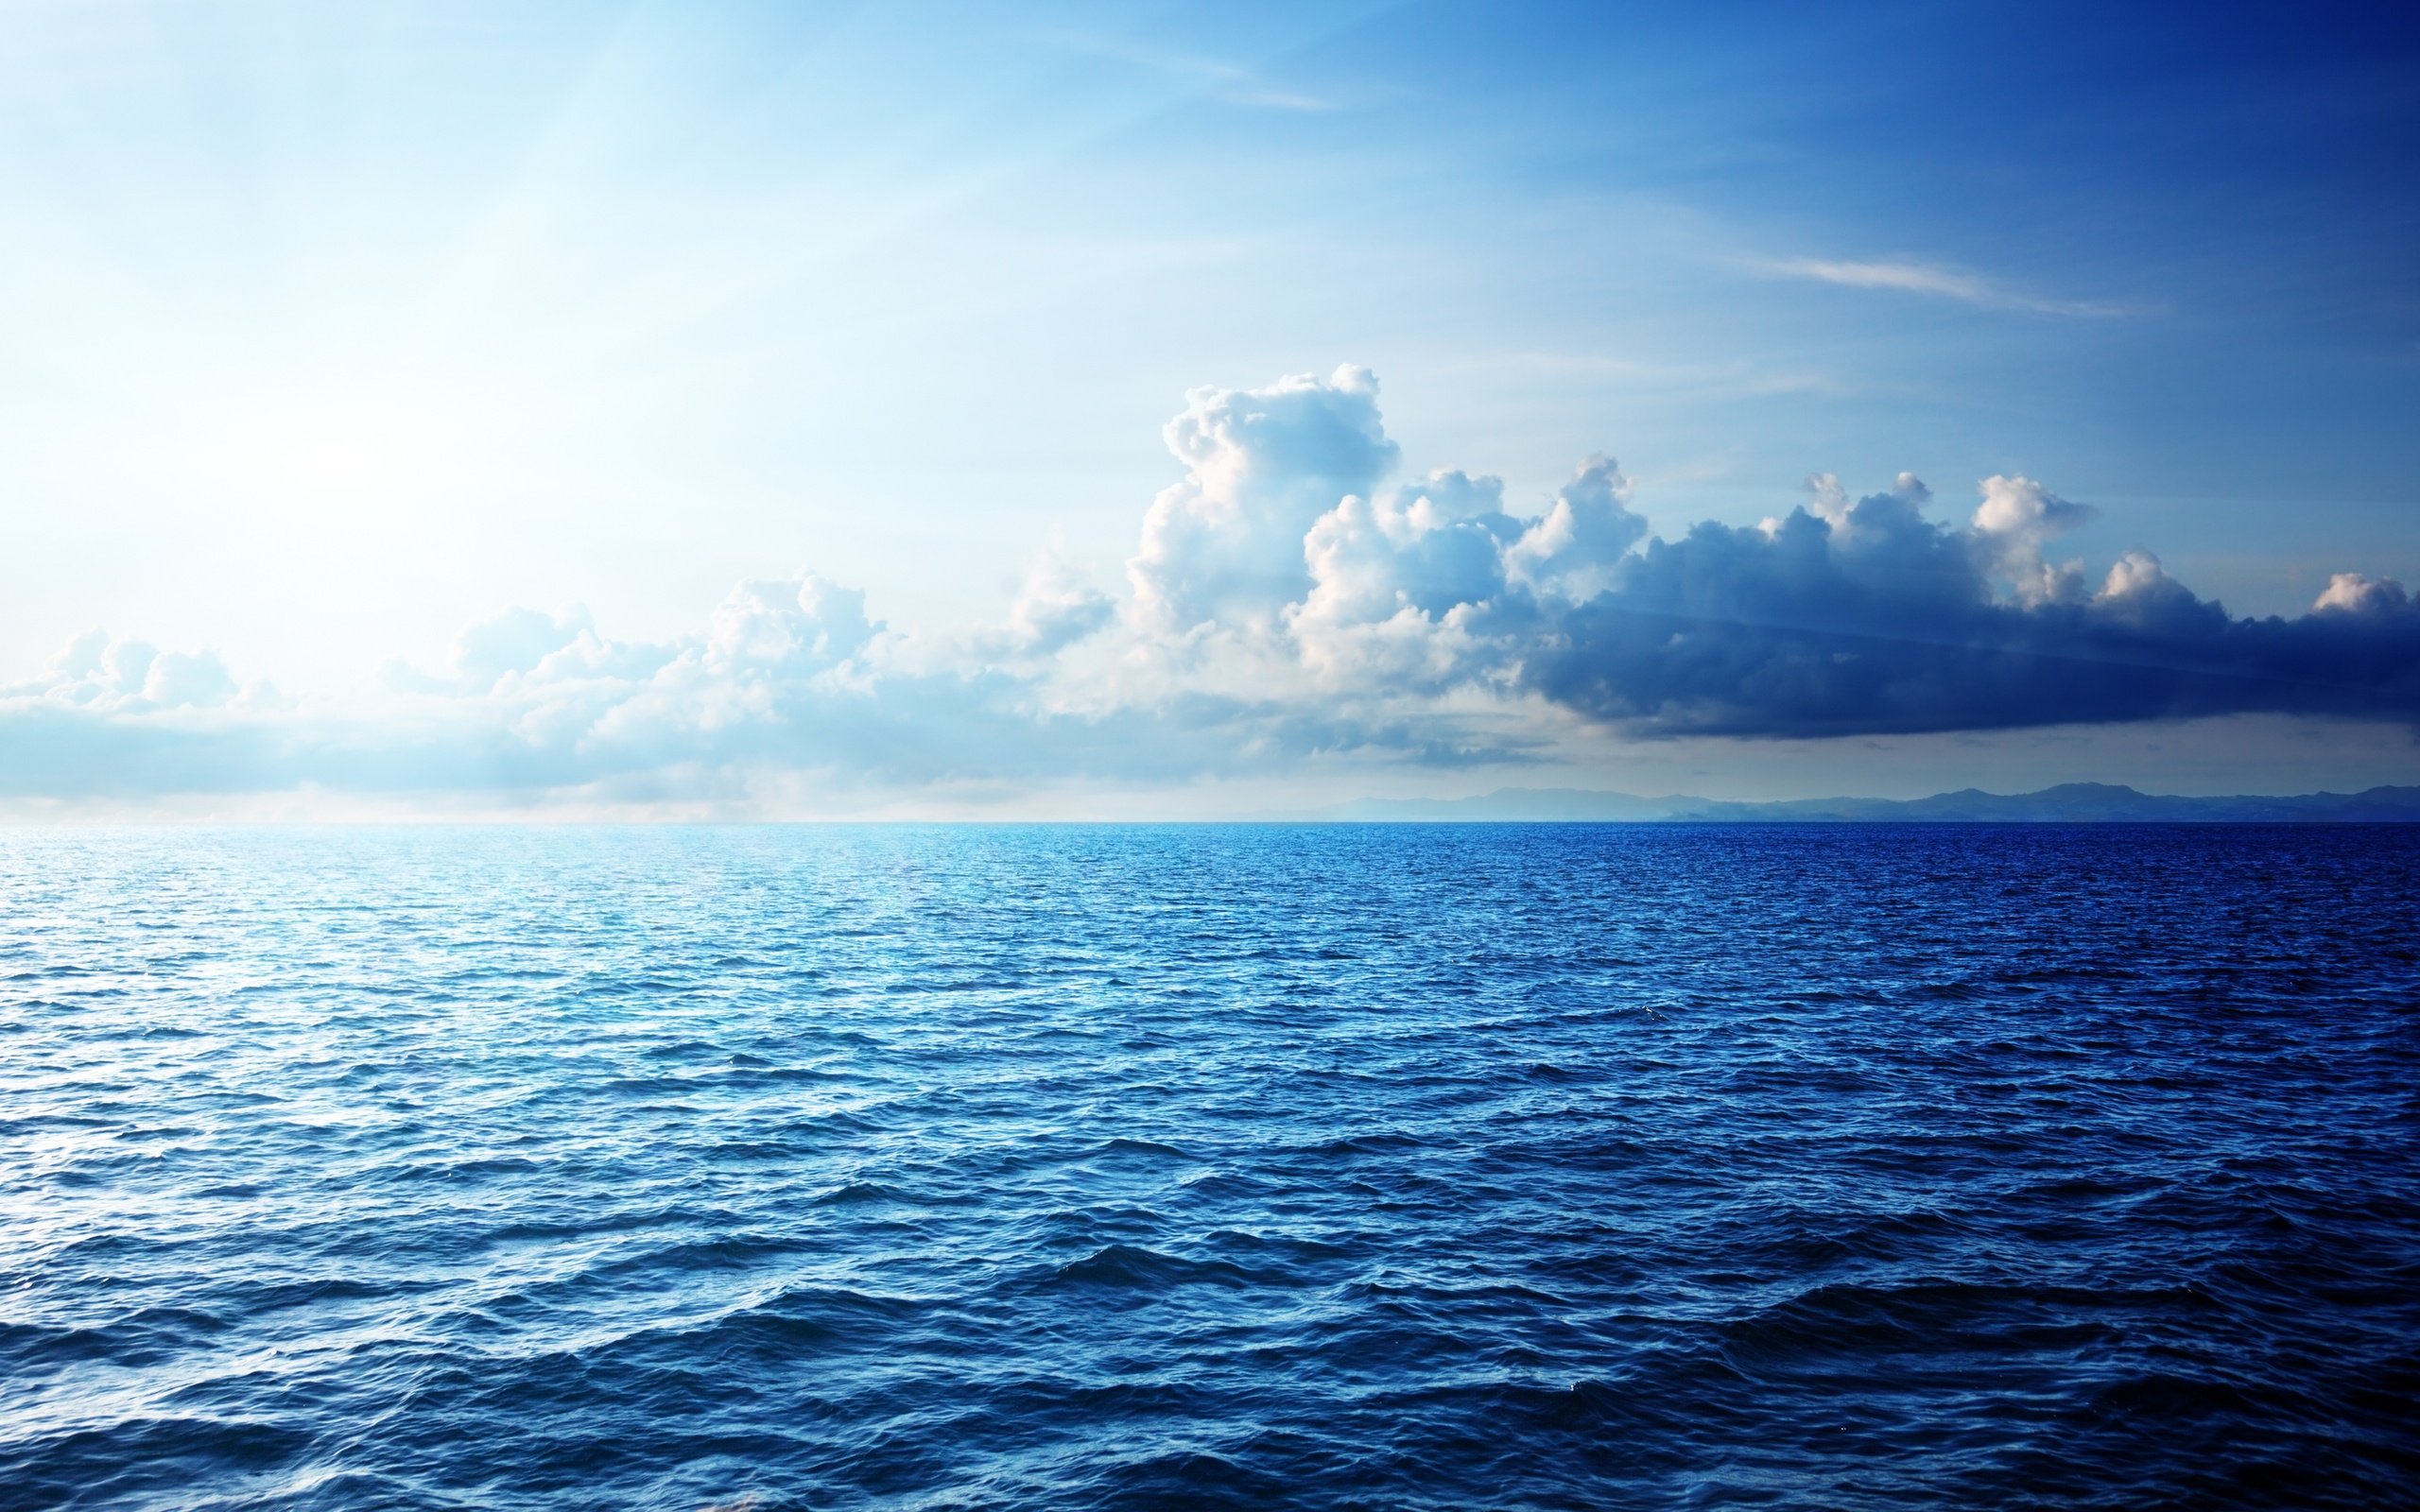  sky caribbean sea beautiful nature sunlight ocean wallpaper background 2560x1600